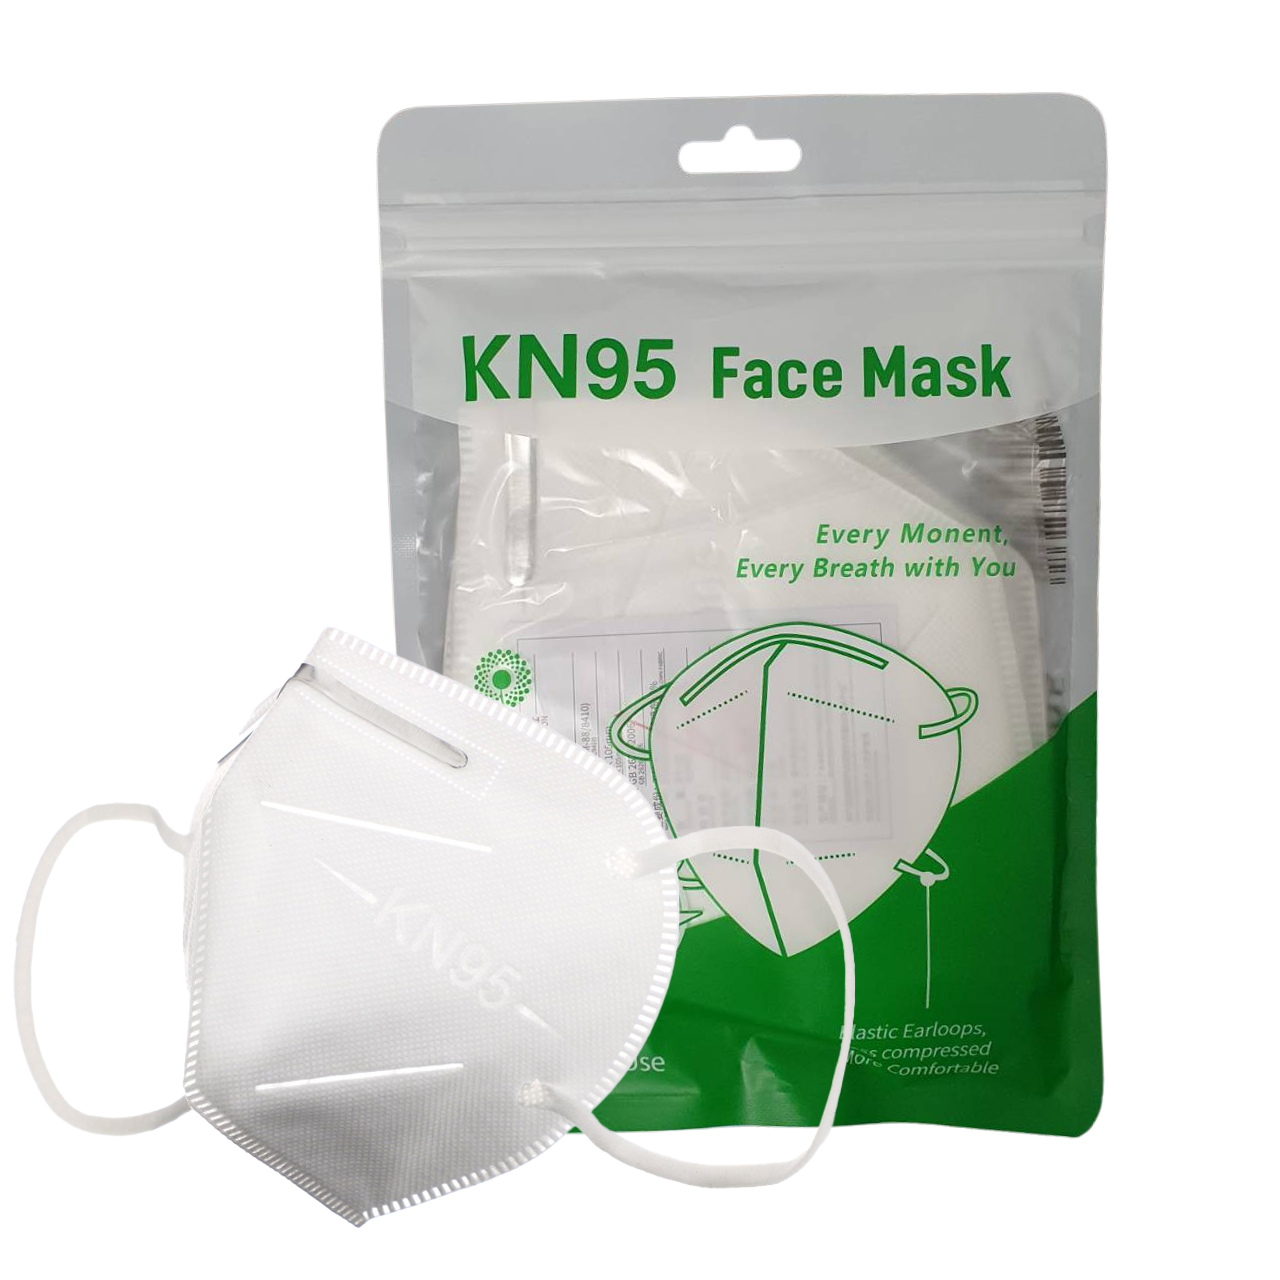 5 และ 10 ชิ้น - หน้ากากอนามัย KN95 กรอง 5 ชั้น ป้องกันไวรัส เชื้อโรค และฝุ่น PM2.5 แมส ผ้าปิดจมูก หน้ากากผ้า ปกป้อง ≥ 95% KN95-A FACE MASK 5-Layer Filtration (5&10 pcs.)